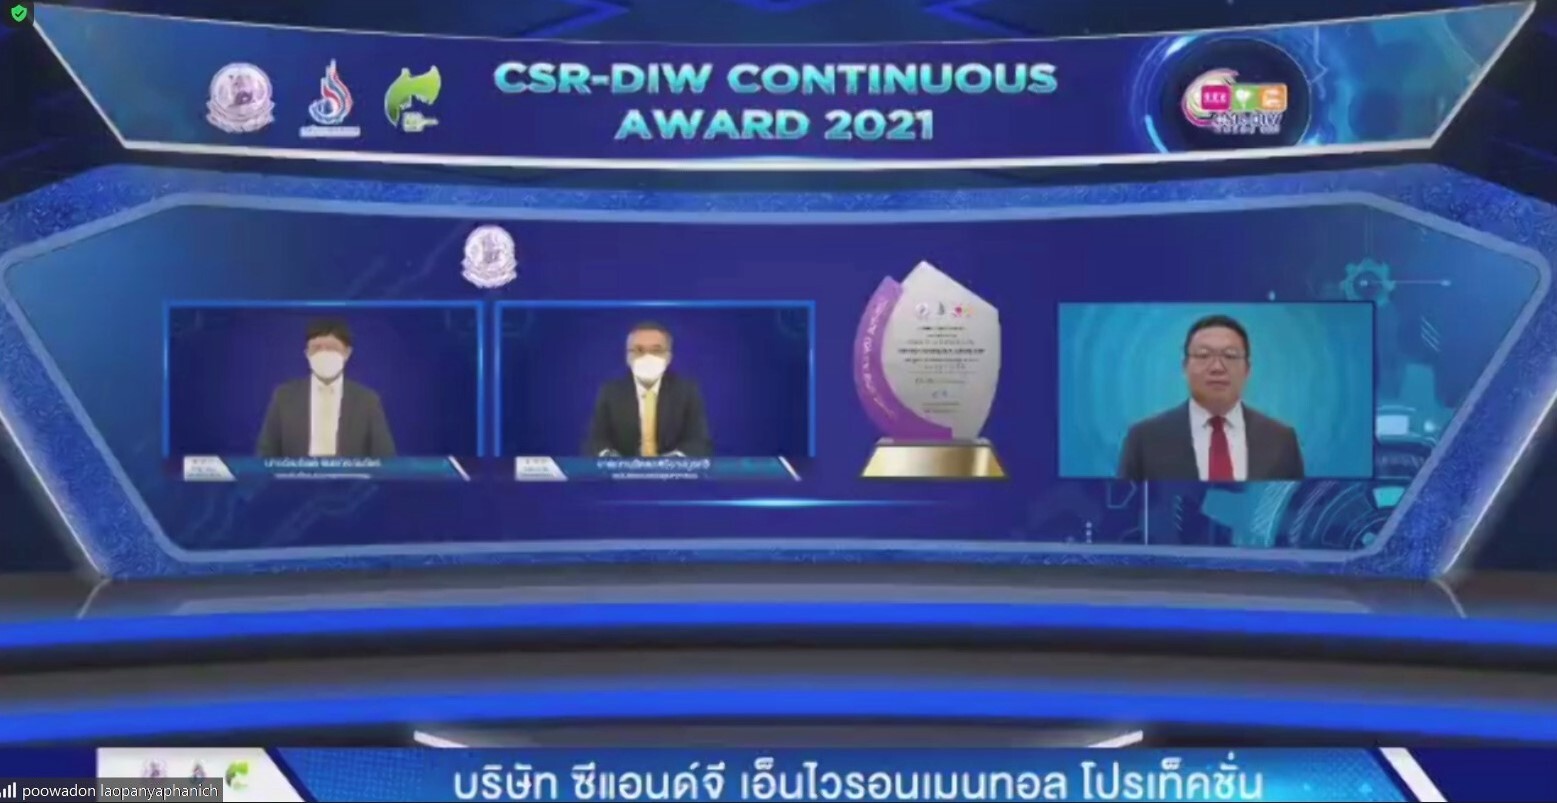 ซีแอนด์จี ฯ รับรางวัล CSR-DIW Continuous Award 2021